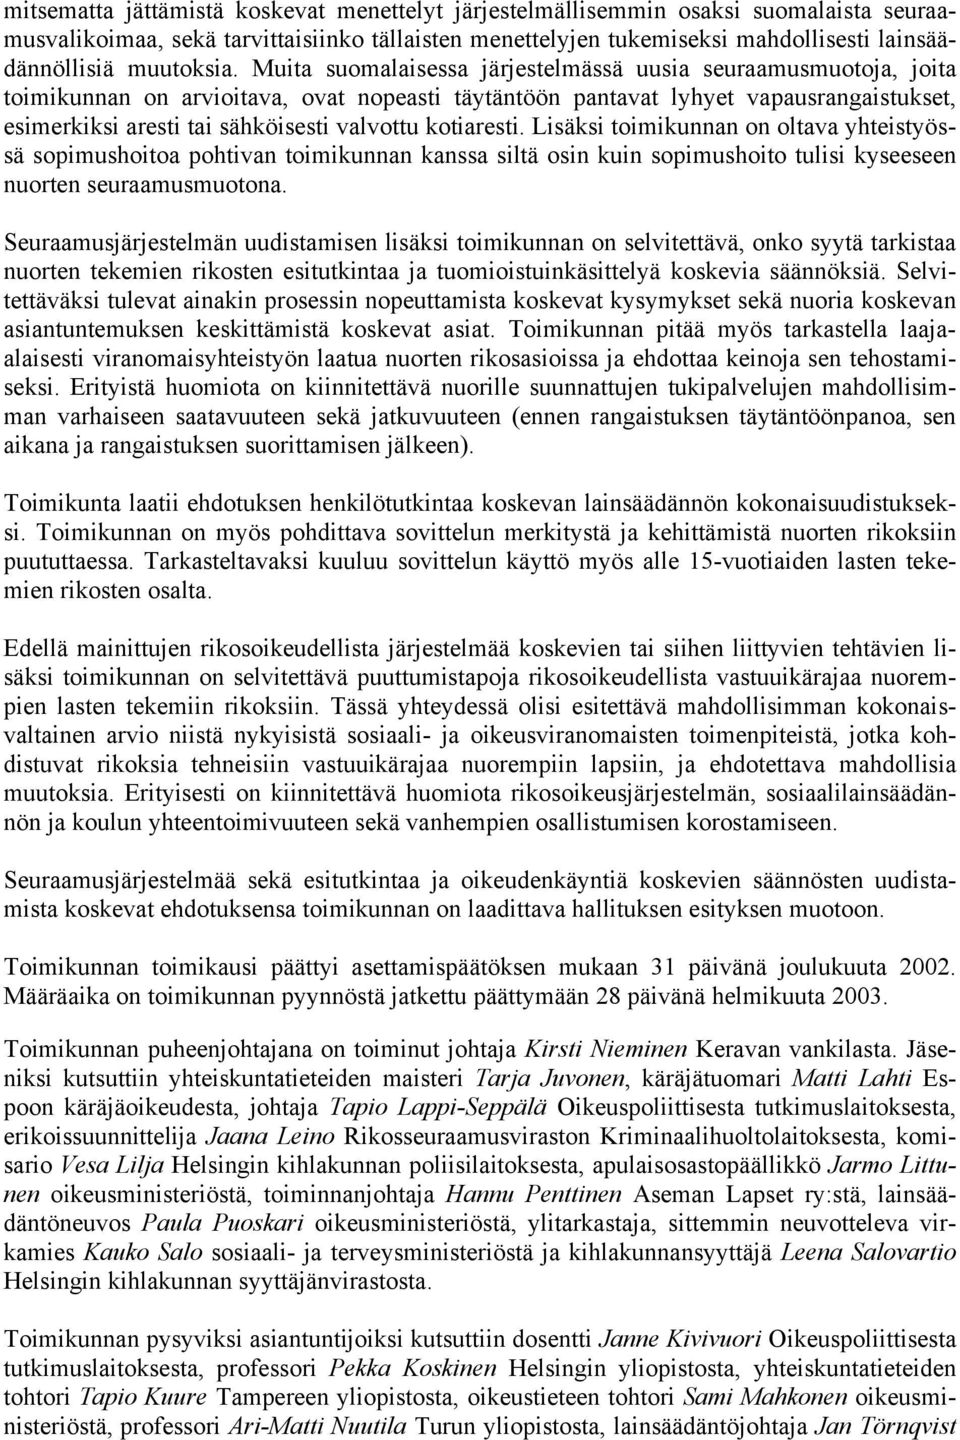 Muita suomalaisessa järjestelmässä uusia seuraamusmuotoja, joita toimikunnan on arvioitava, ovat nopeasti täytäntöön pantavat lyhyet vapausrangaistukset, esimerkiksi aresti tai sähköisesti valvottu